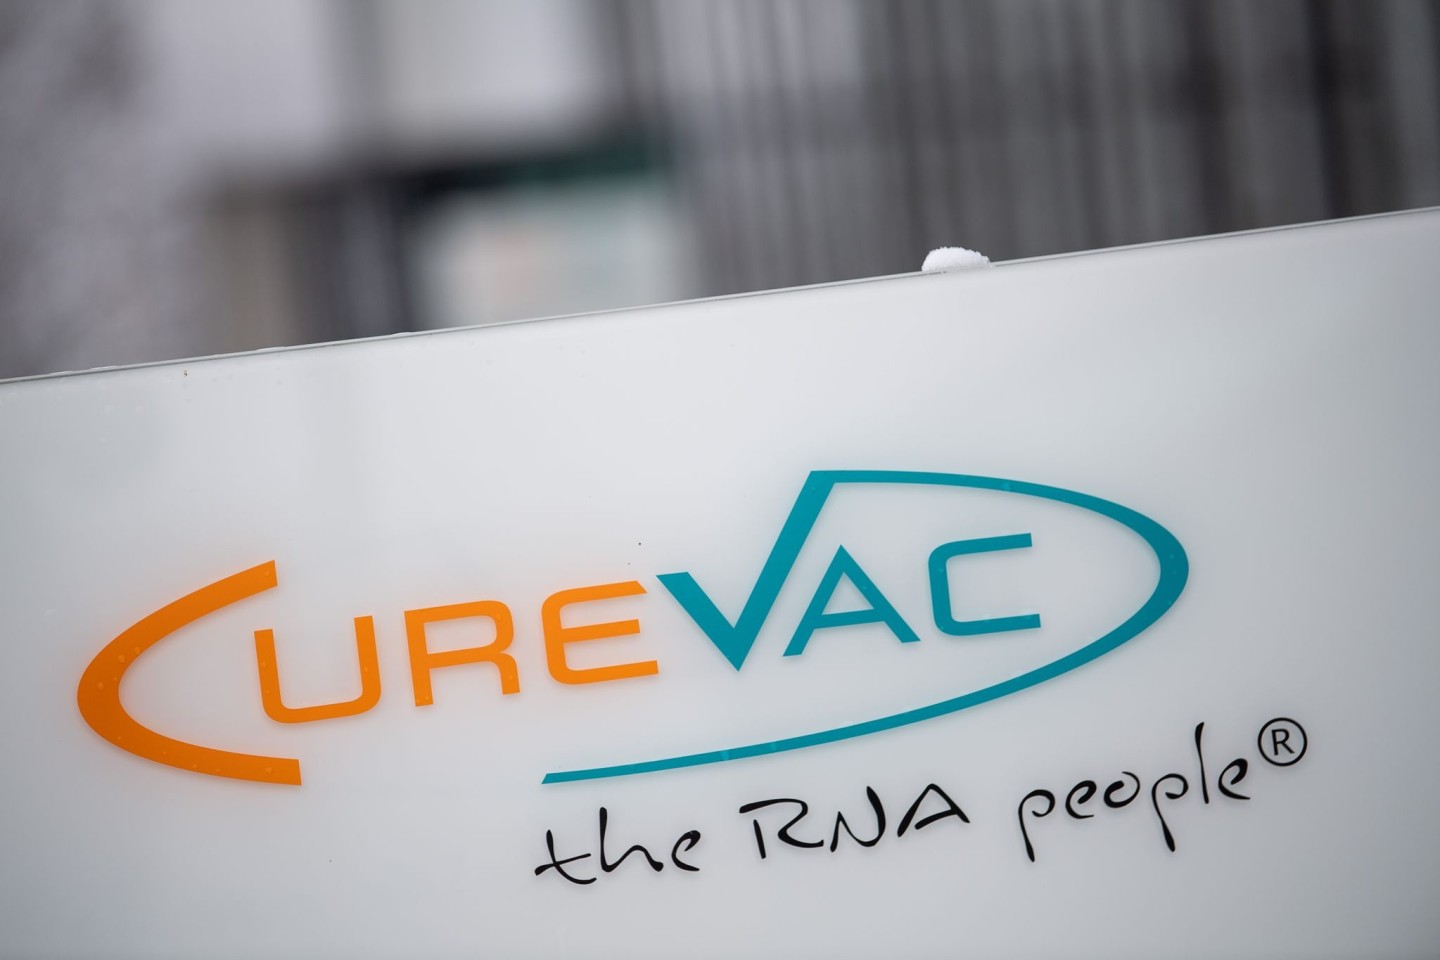 Curevac will sich künftig mit seinem britischen Partner GlaxoSmithKline auf die Entwicklung eines weiteren Covid-19-Impfstoffs fokussieren.